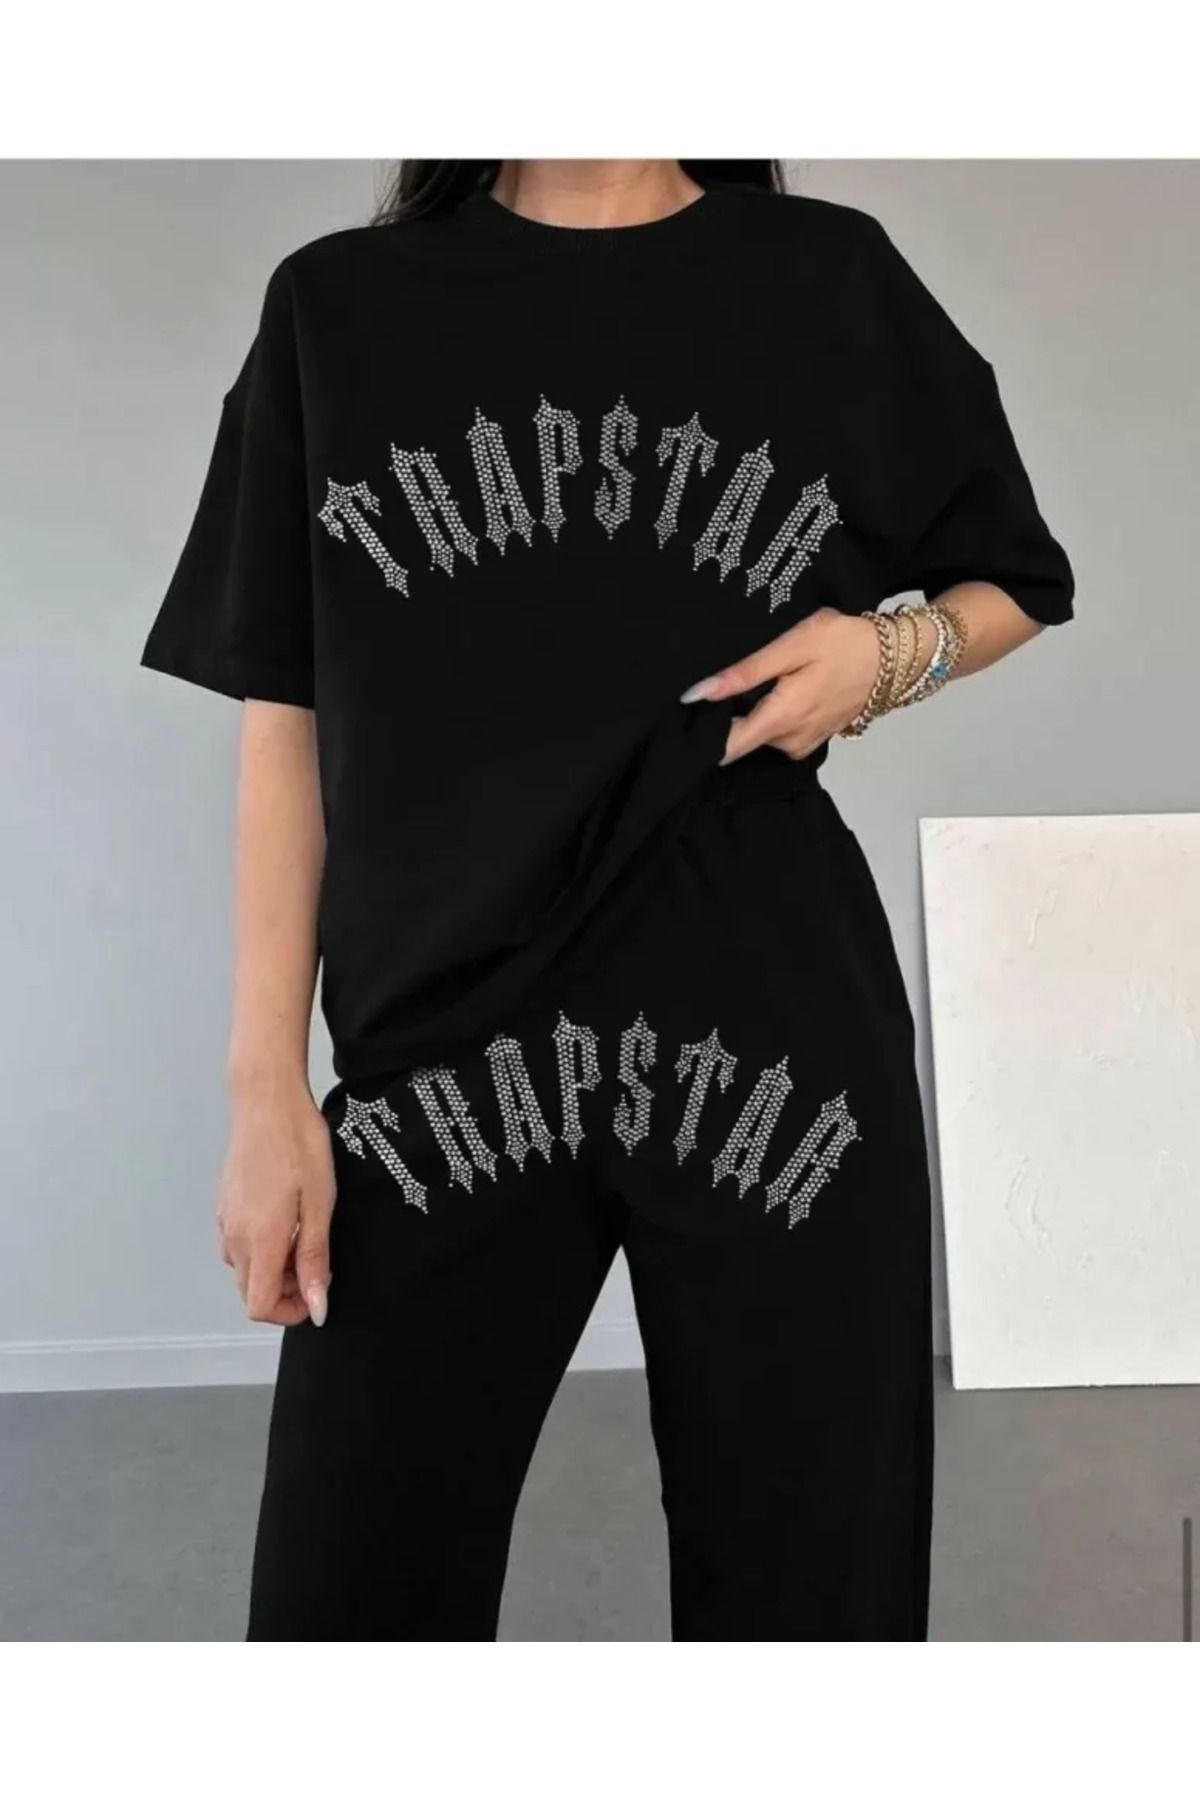 YAKAMOZ MODA Moda bemko Unisex Taşlı T-Shirt Ve Eşofman Takımı - Siyah